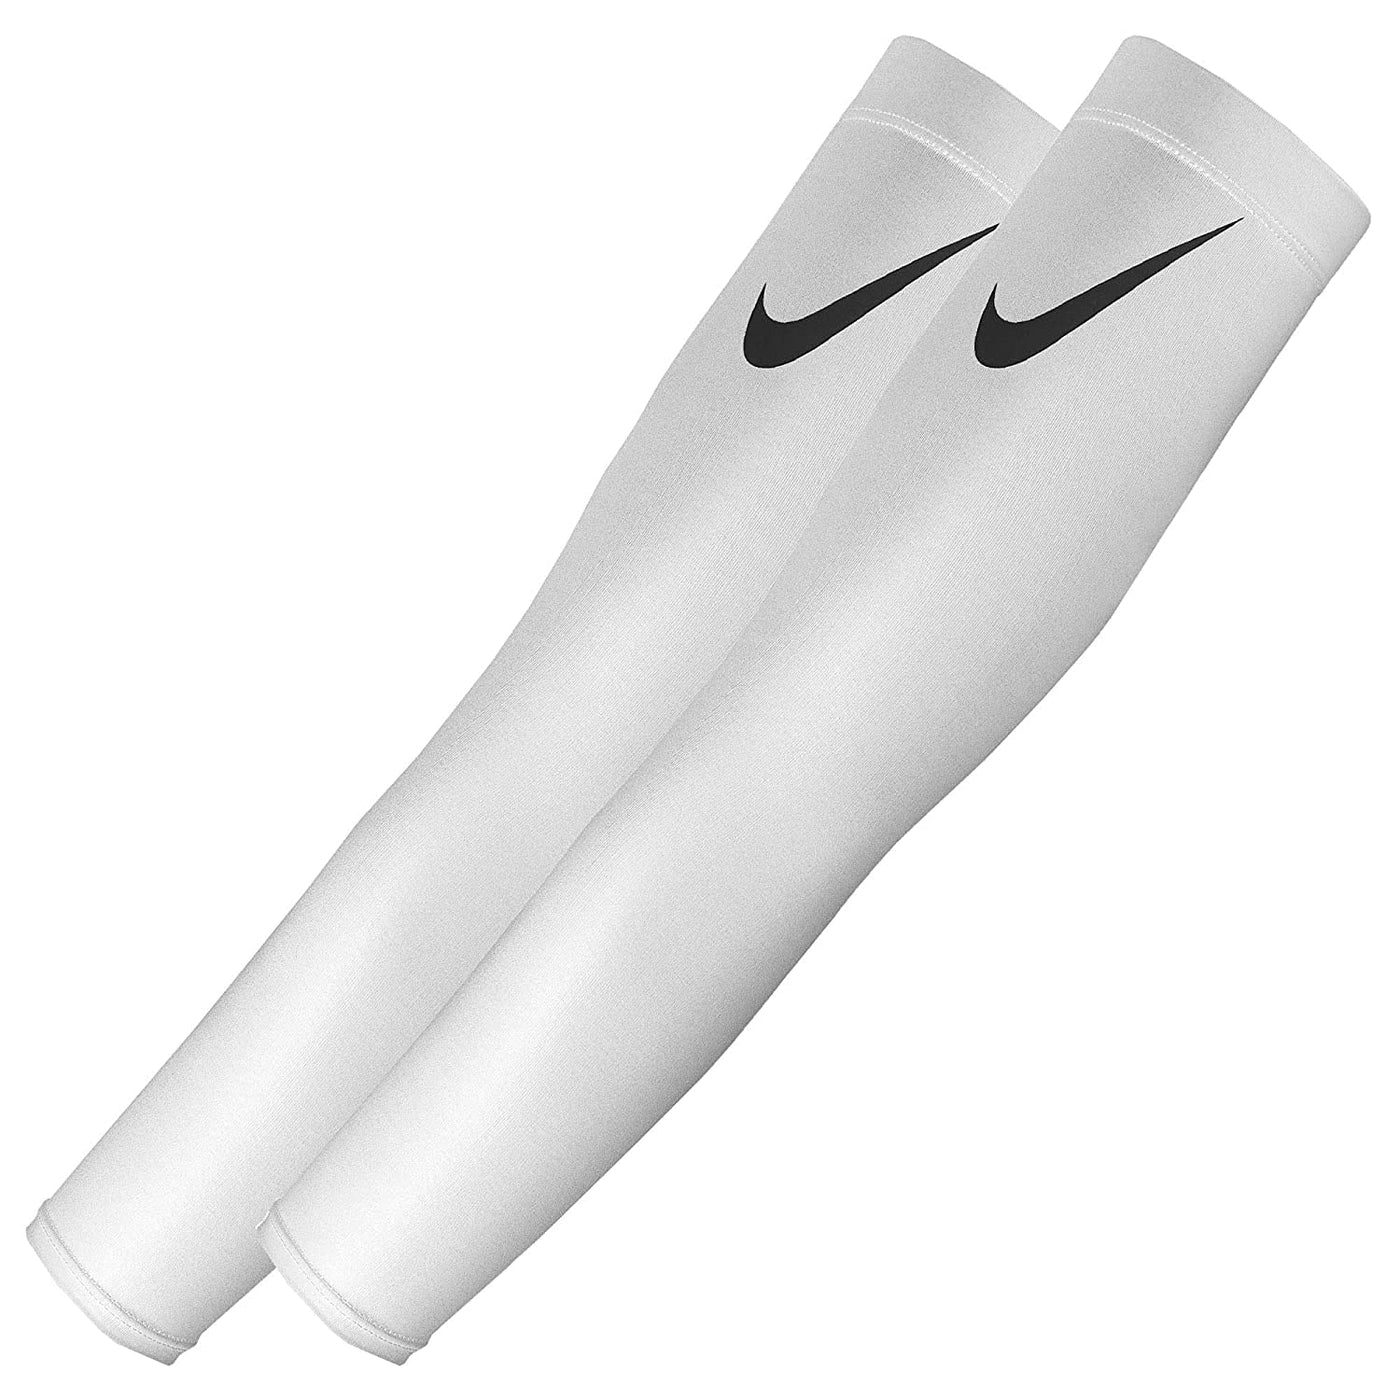 Nike unisex arm sleeve - White